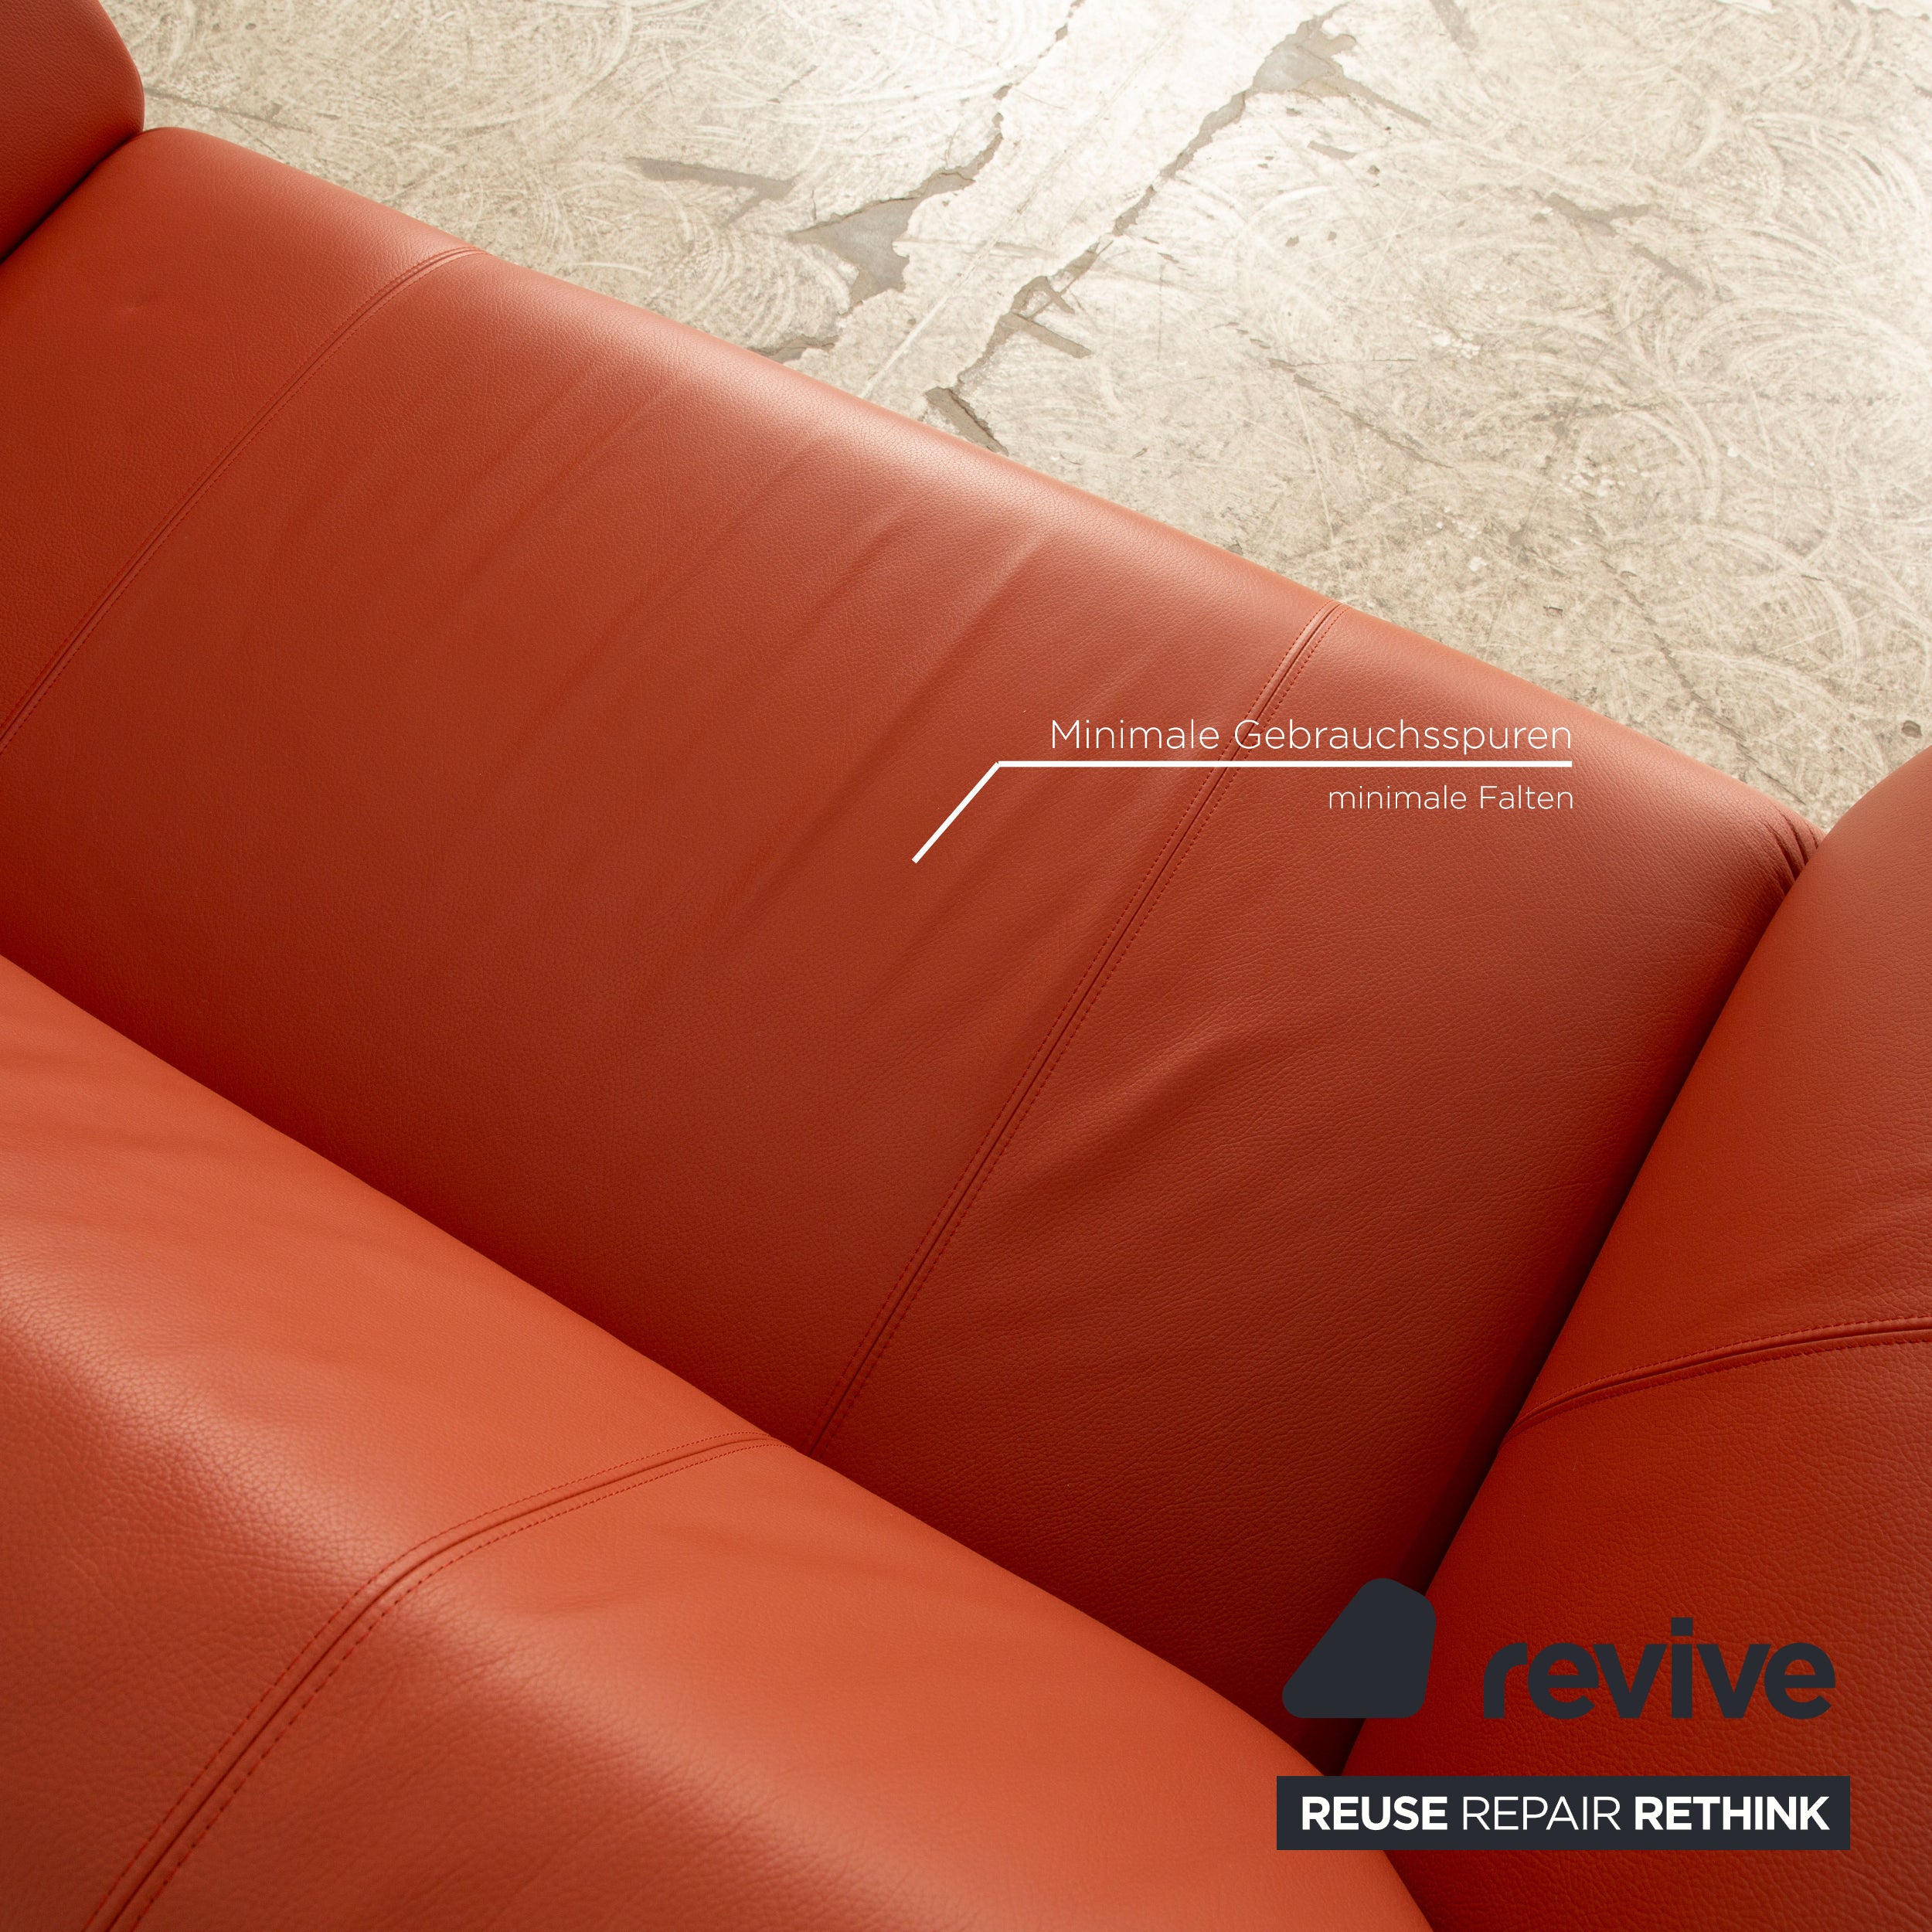 Rolf Benz 322 Leder Zweisitzer Orange Rot Sofa Couch